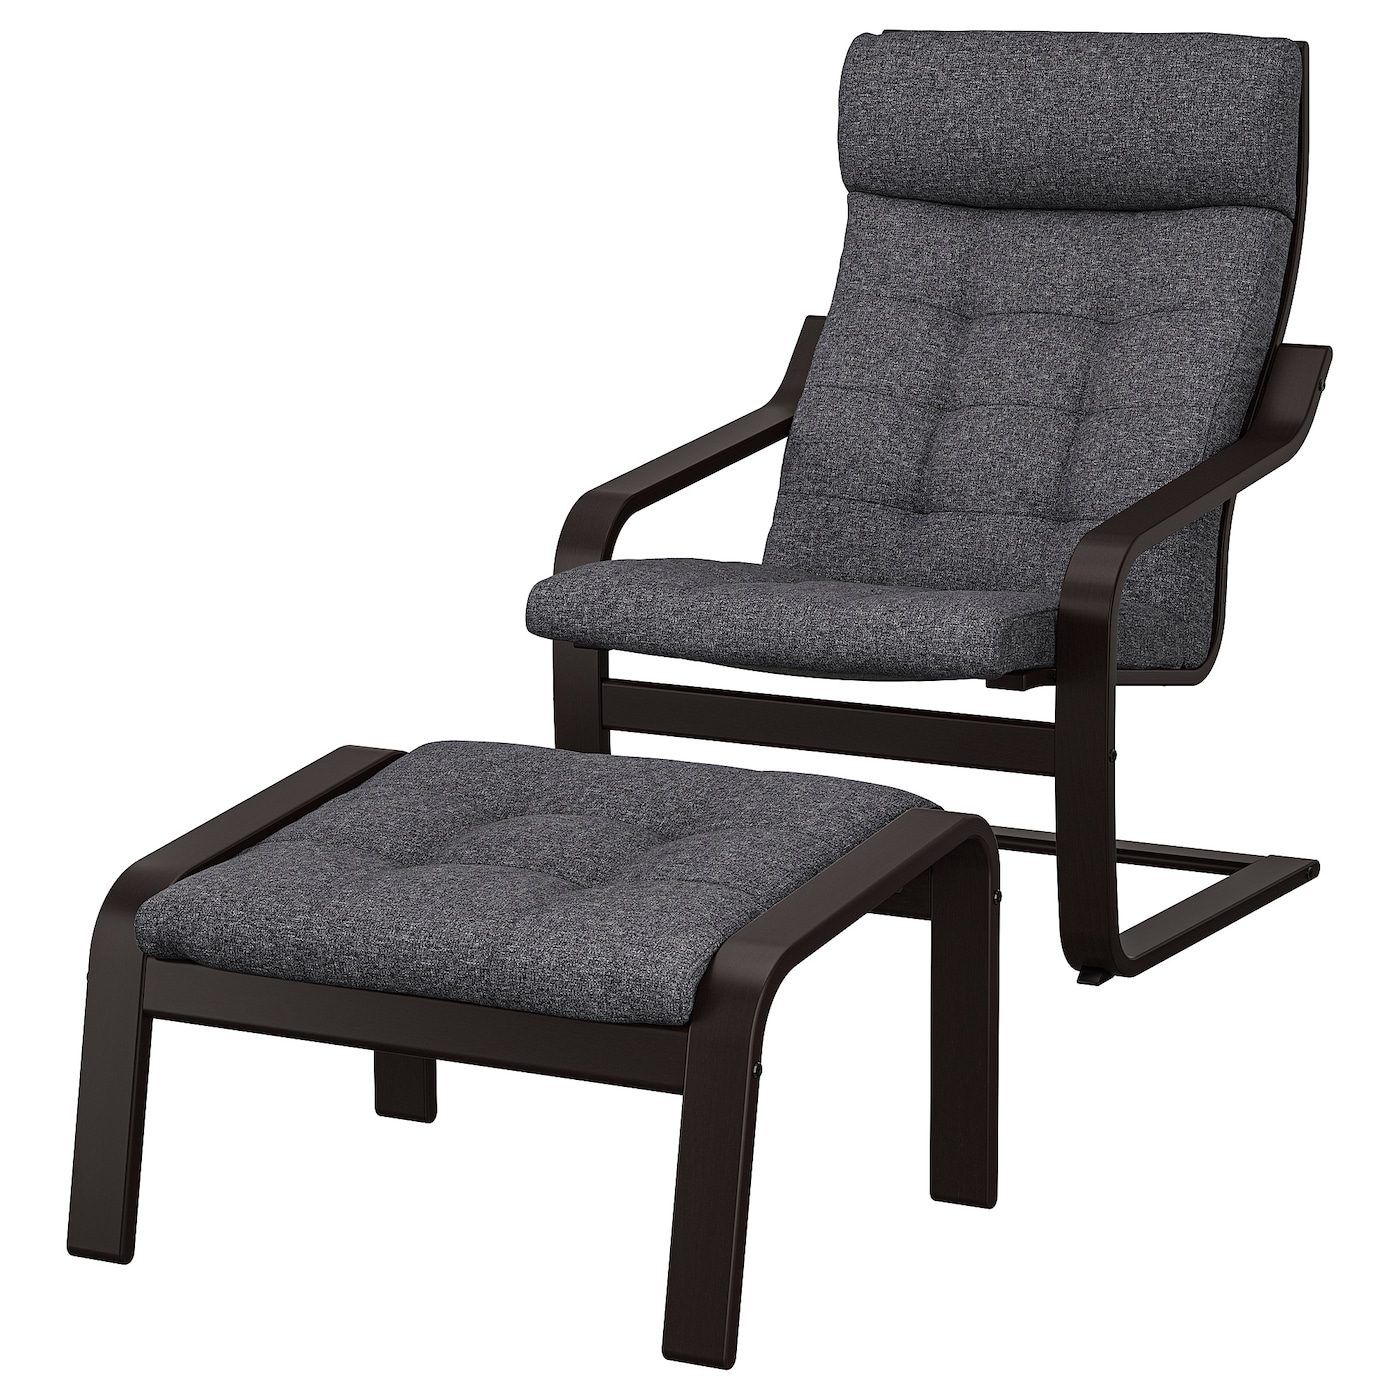 ПОЭНГ Кресло и подставка для ног, черно-коричневый/Гуннаред темно-серый POÄNG IKEA